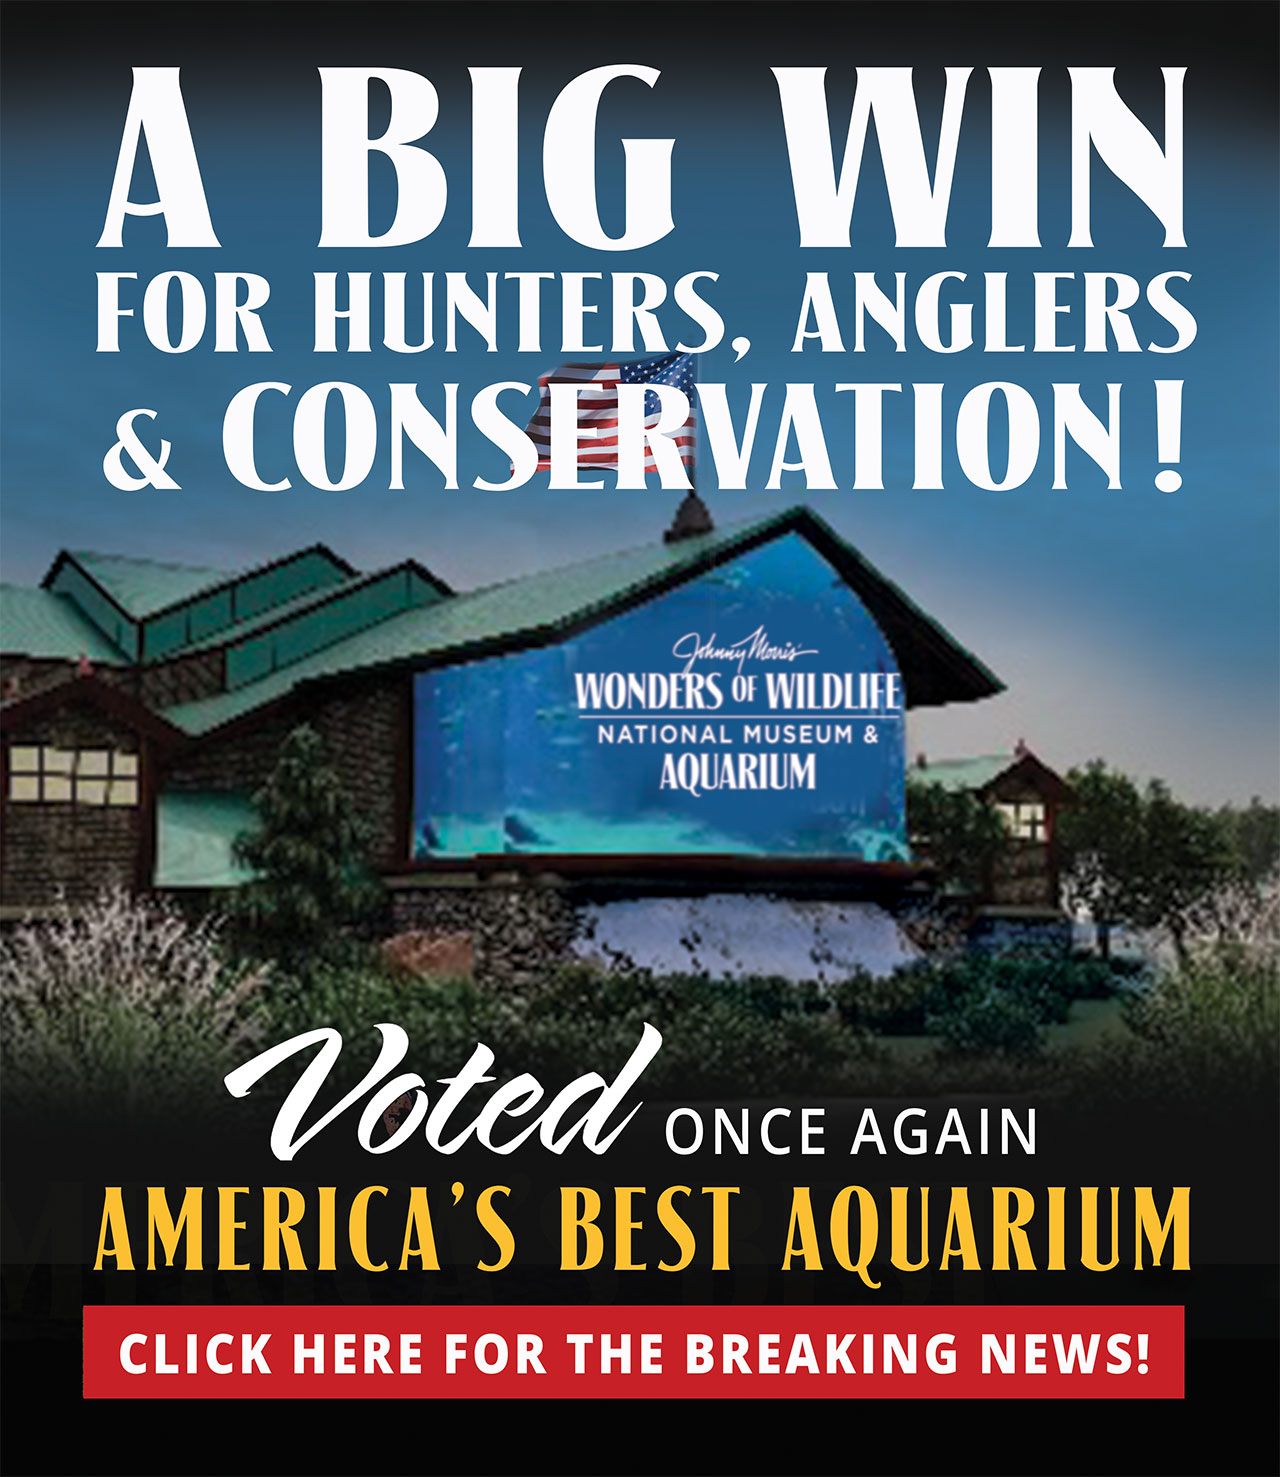 Wonders of Wildlife Voted America's Best Aquarium